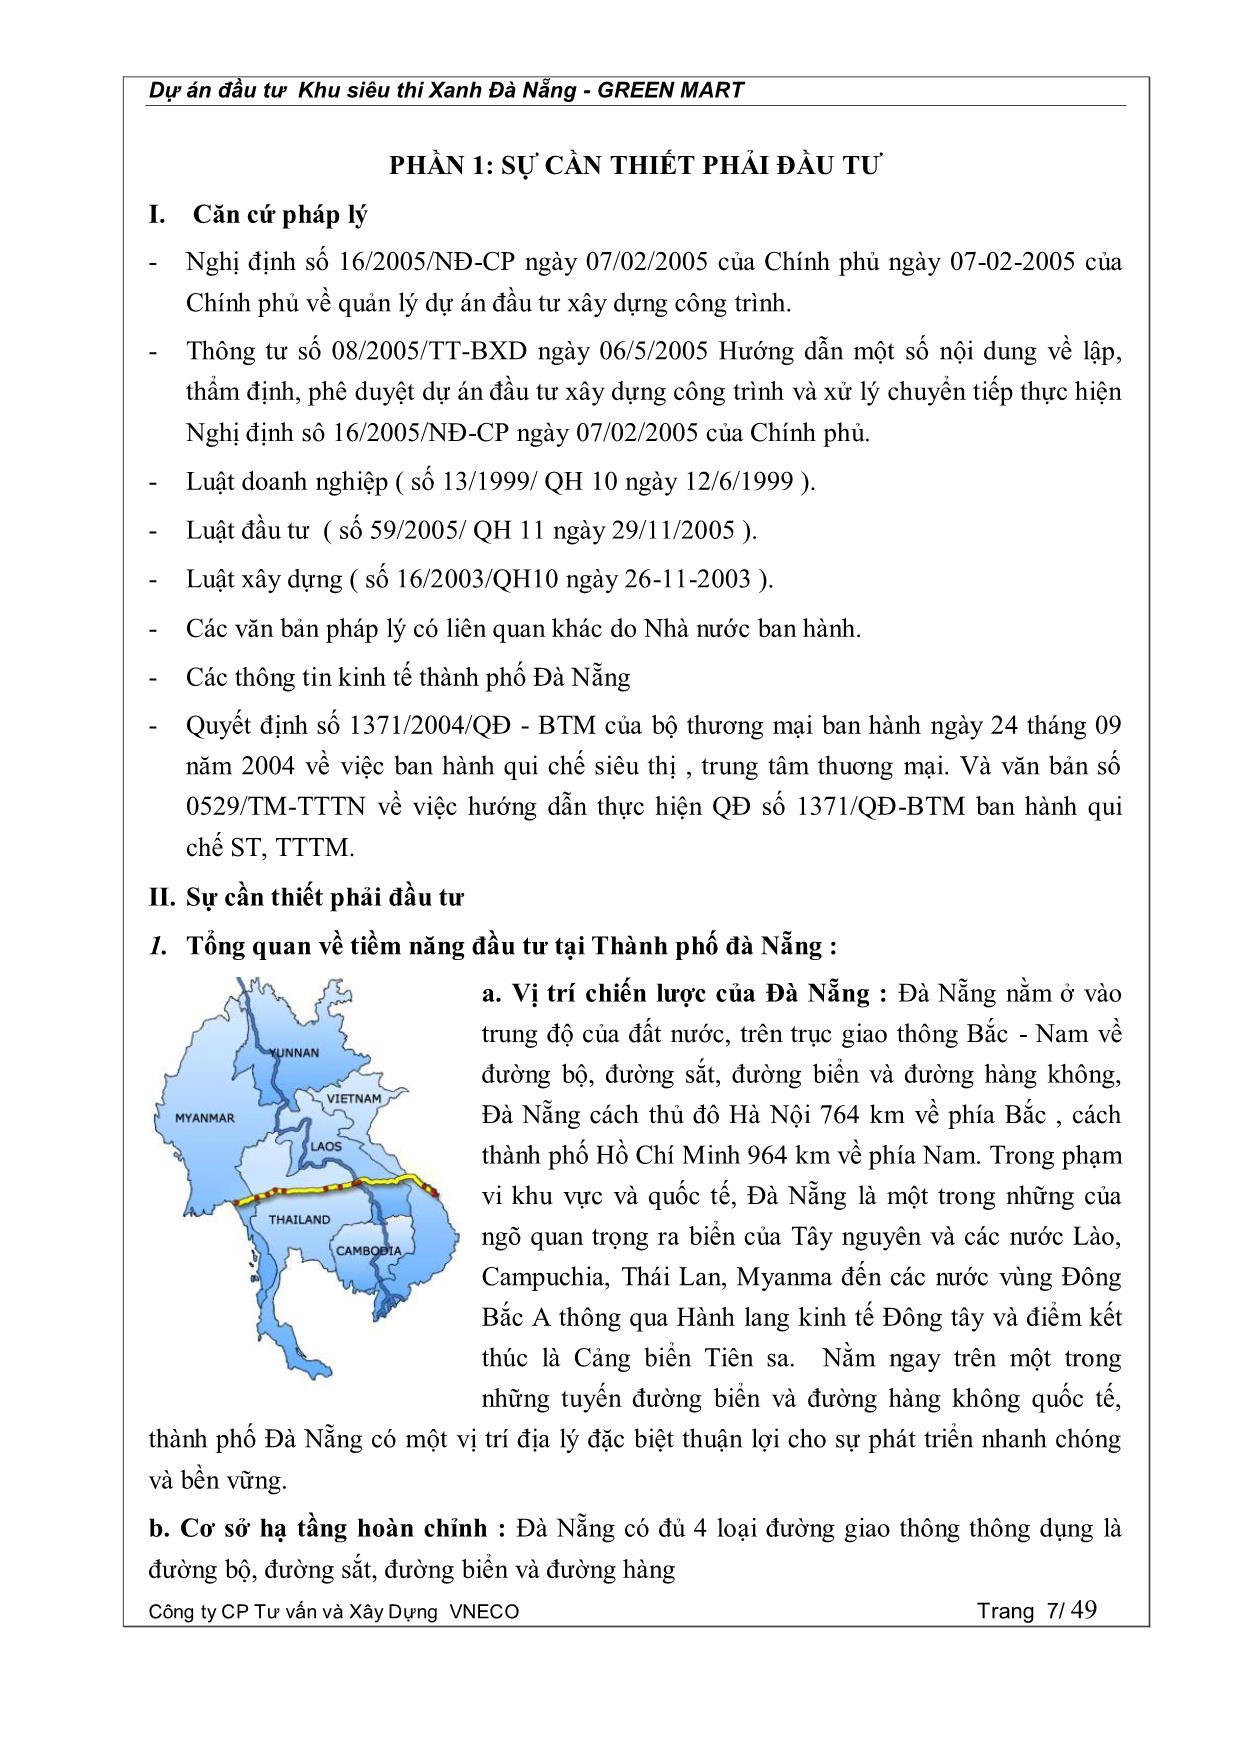 Dự án đầu tư Khu siêu thị xanh Đà Nẵng - Green Mart trang 7